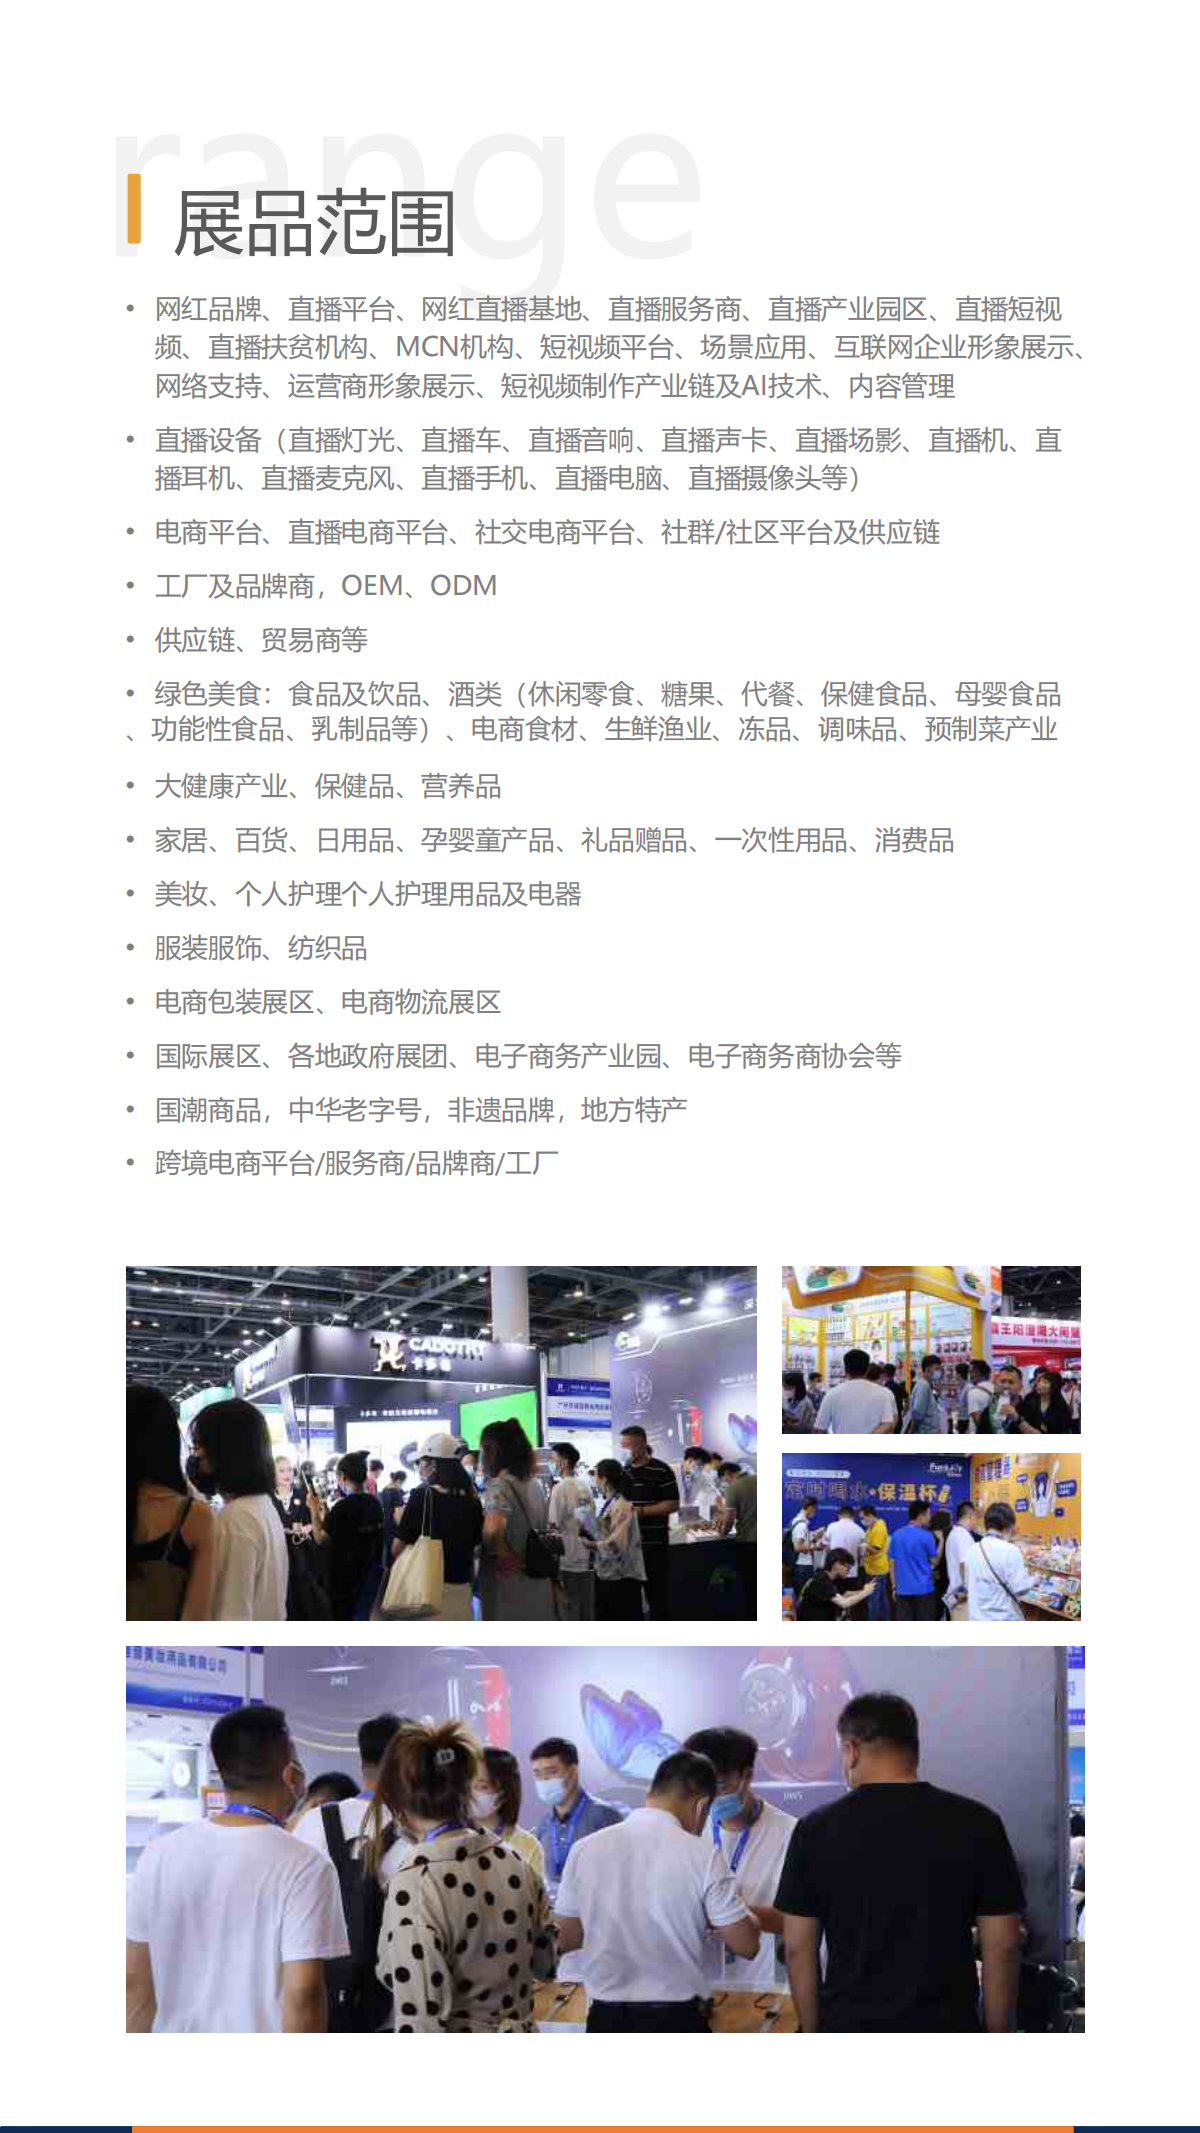 2023第十二届全球新电商博览会暨杭州网红直播电商展